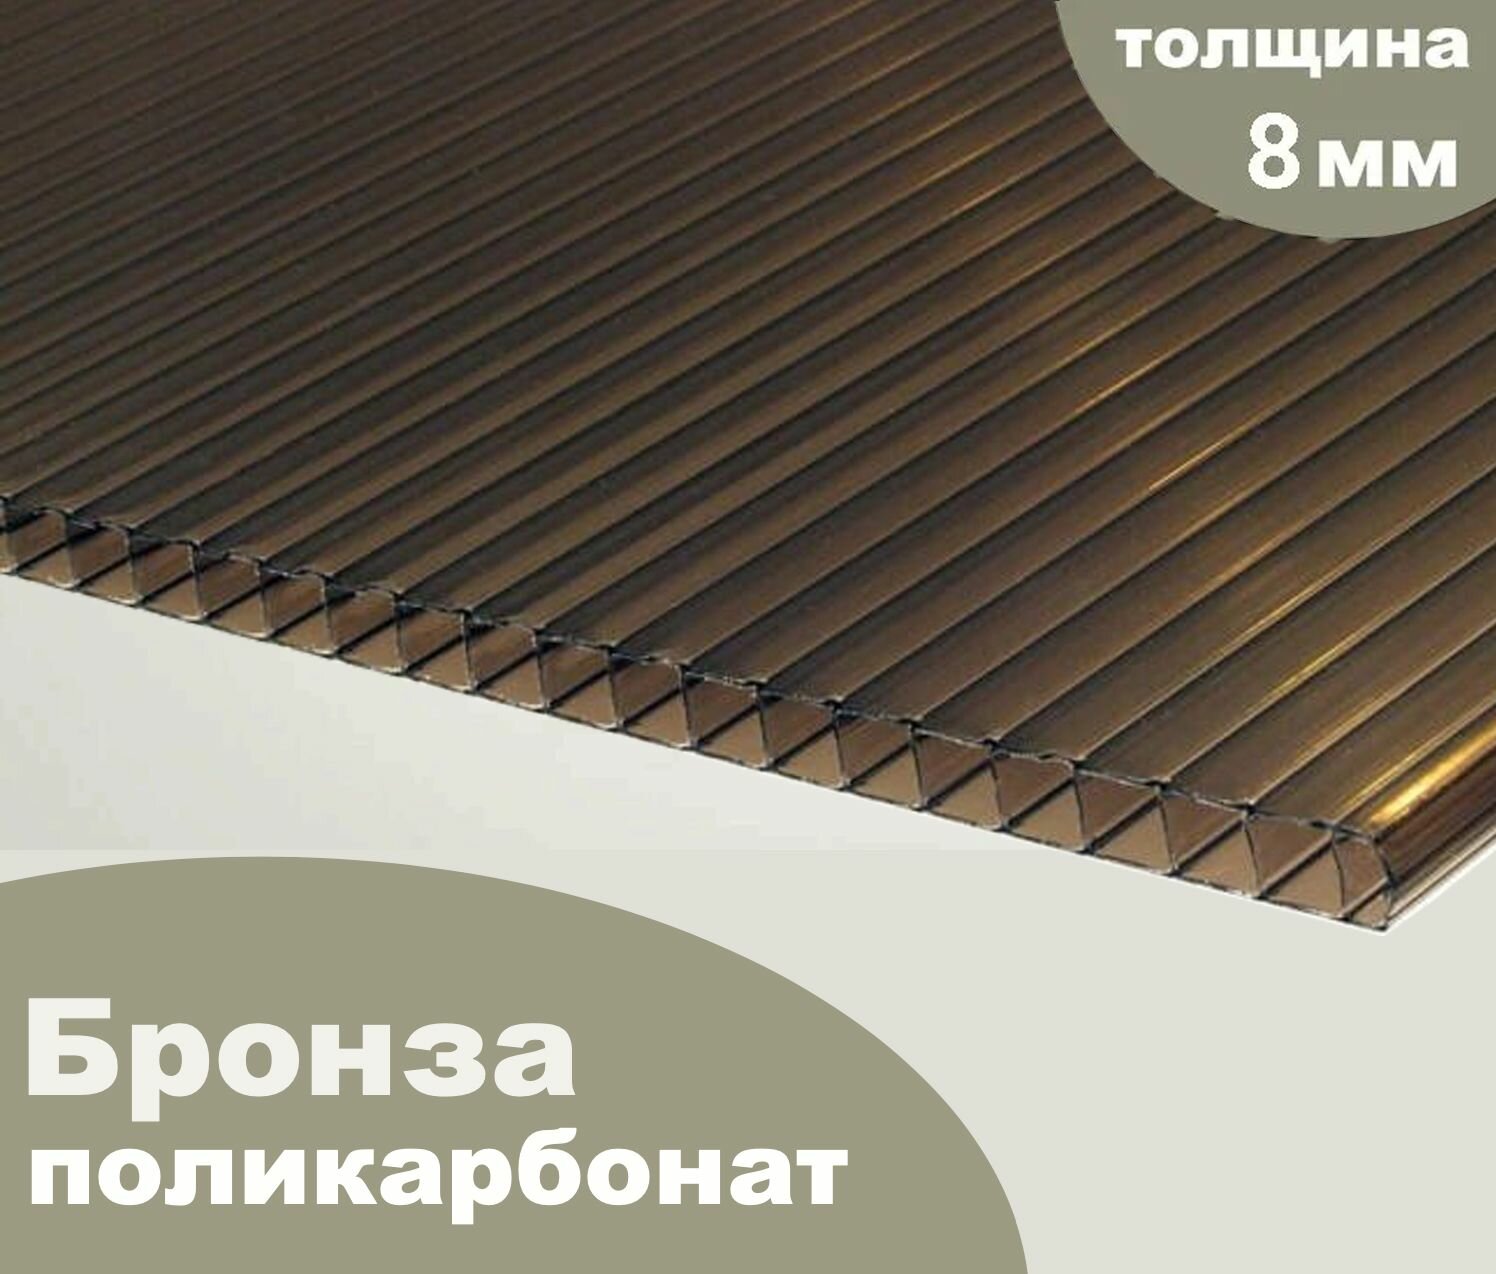 Сотовый поликарбонат бронза, Ultramarin, 8 мм, 6 метров, 3 листа